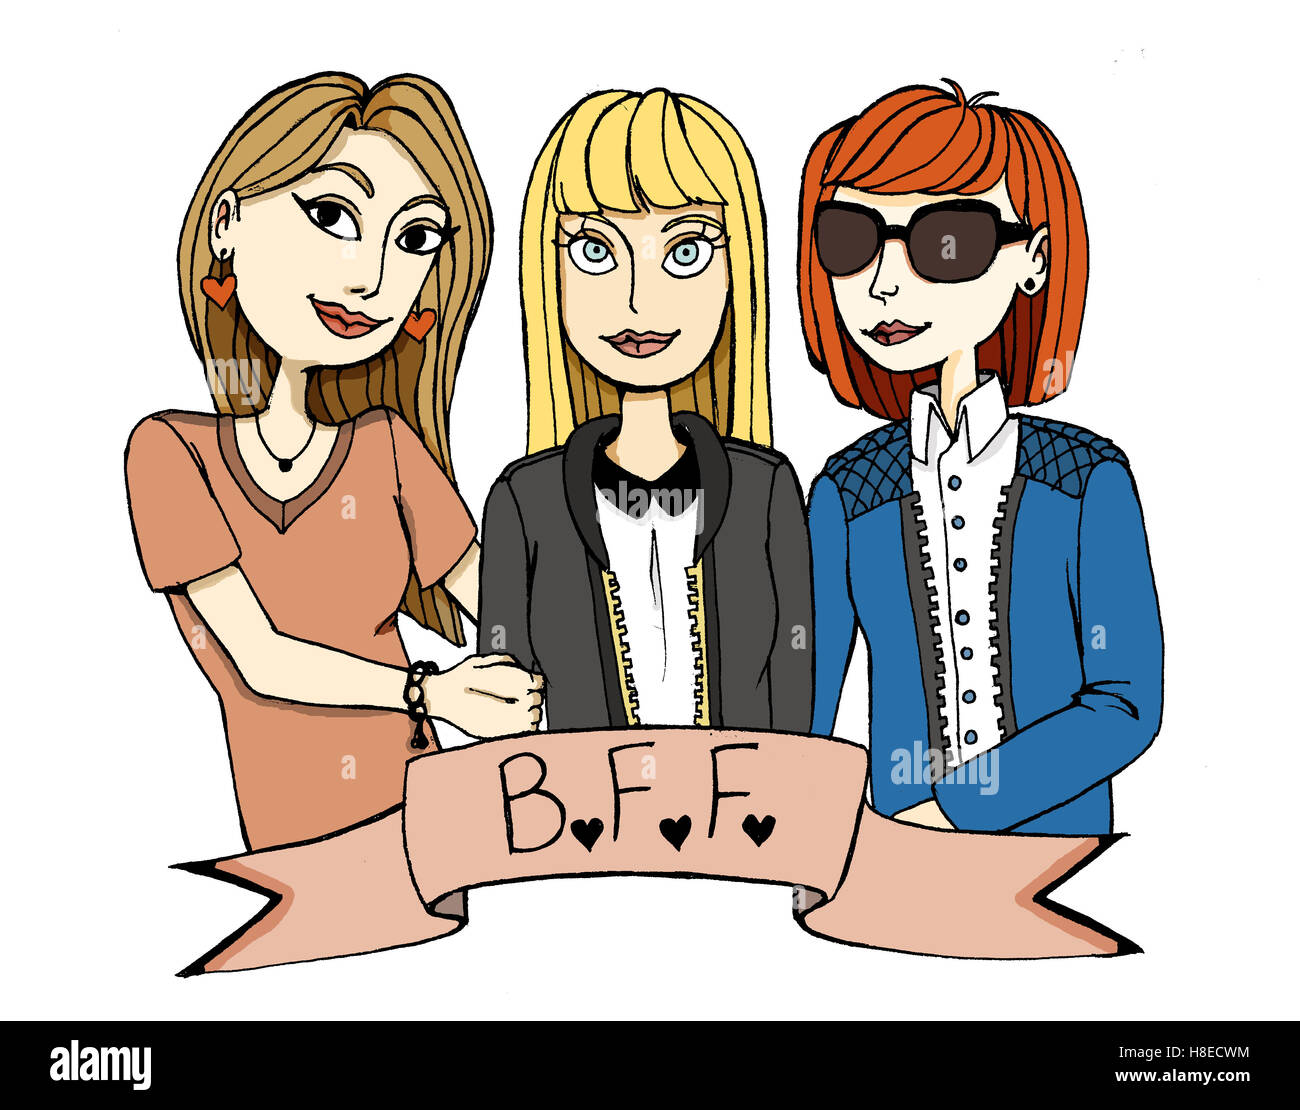 Drei Mädchen gut befreundet, gefärbt. Brünette, blonde und rote Haare, eine mit Sonnenbrille. Stockfoto